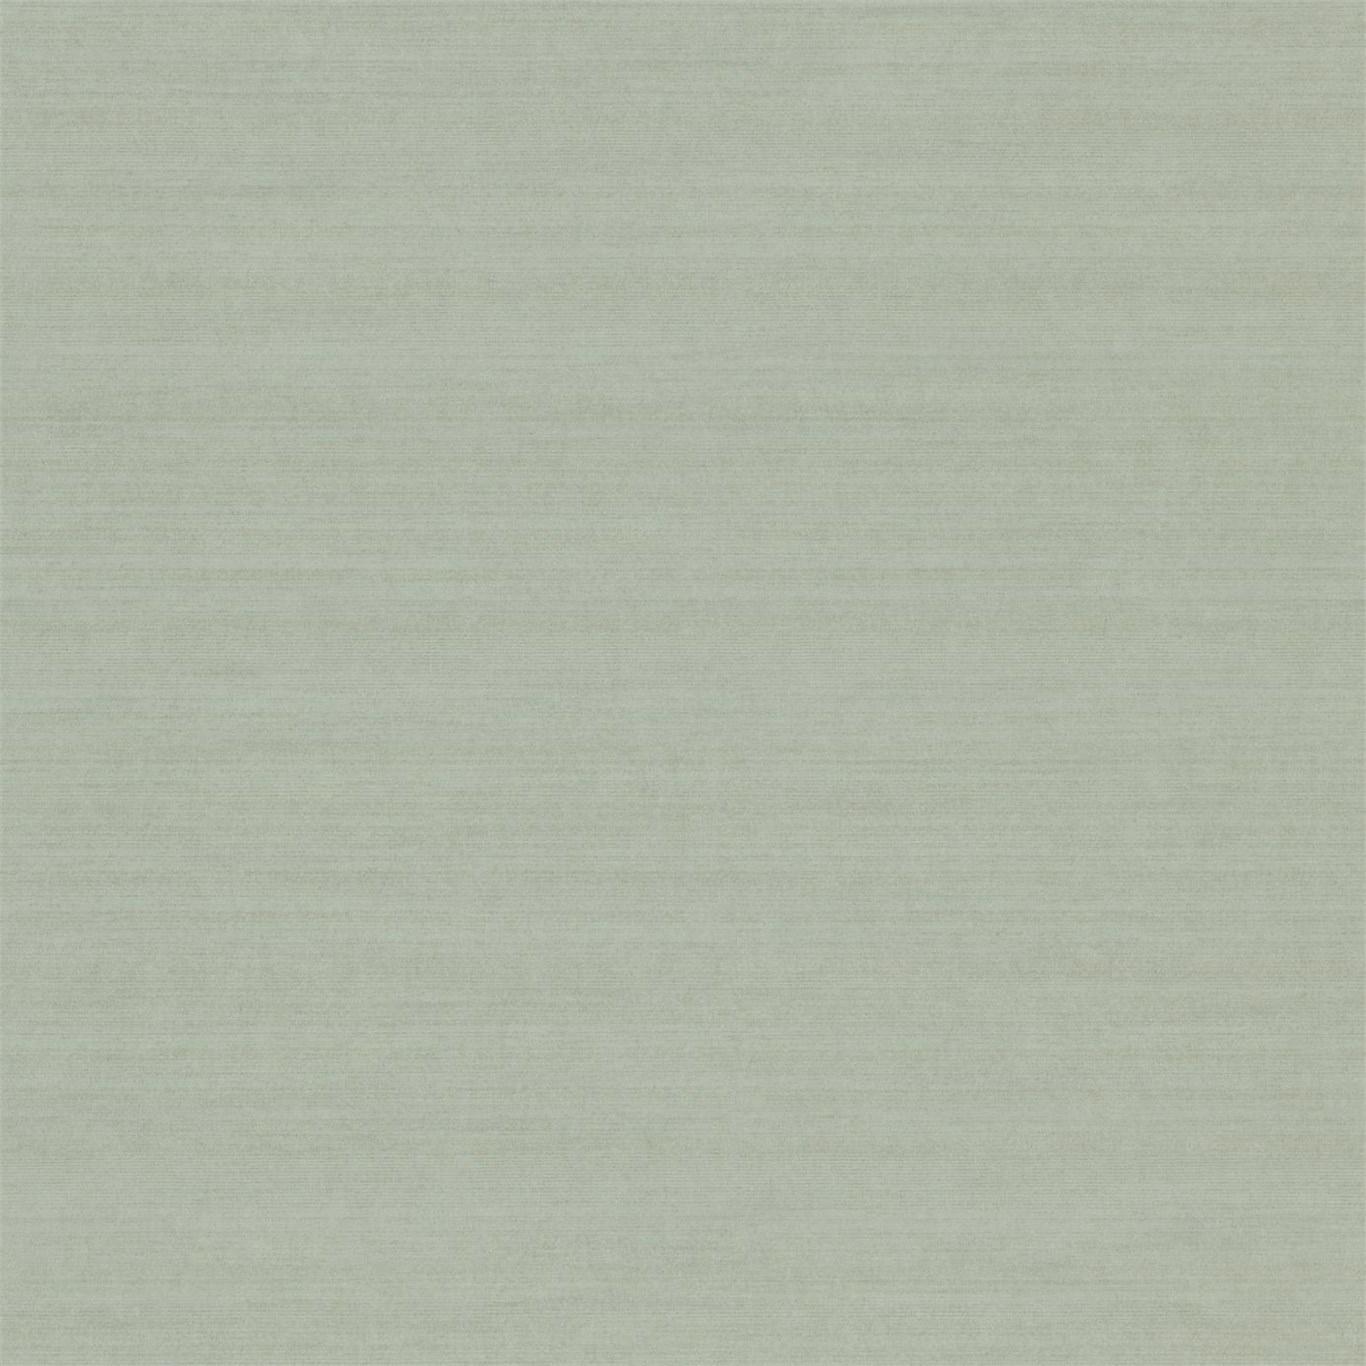 Silk Plain Teal Wallpaper by ZOF